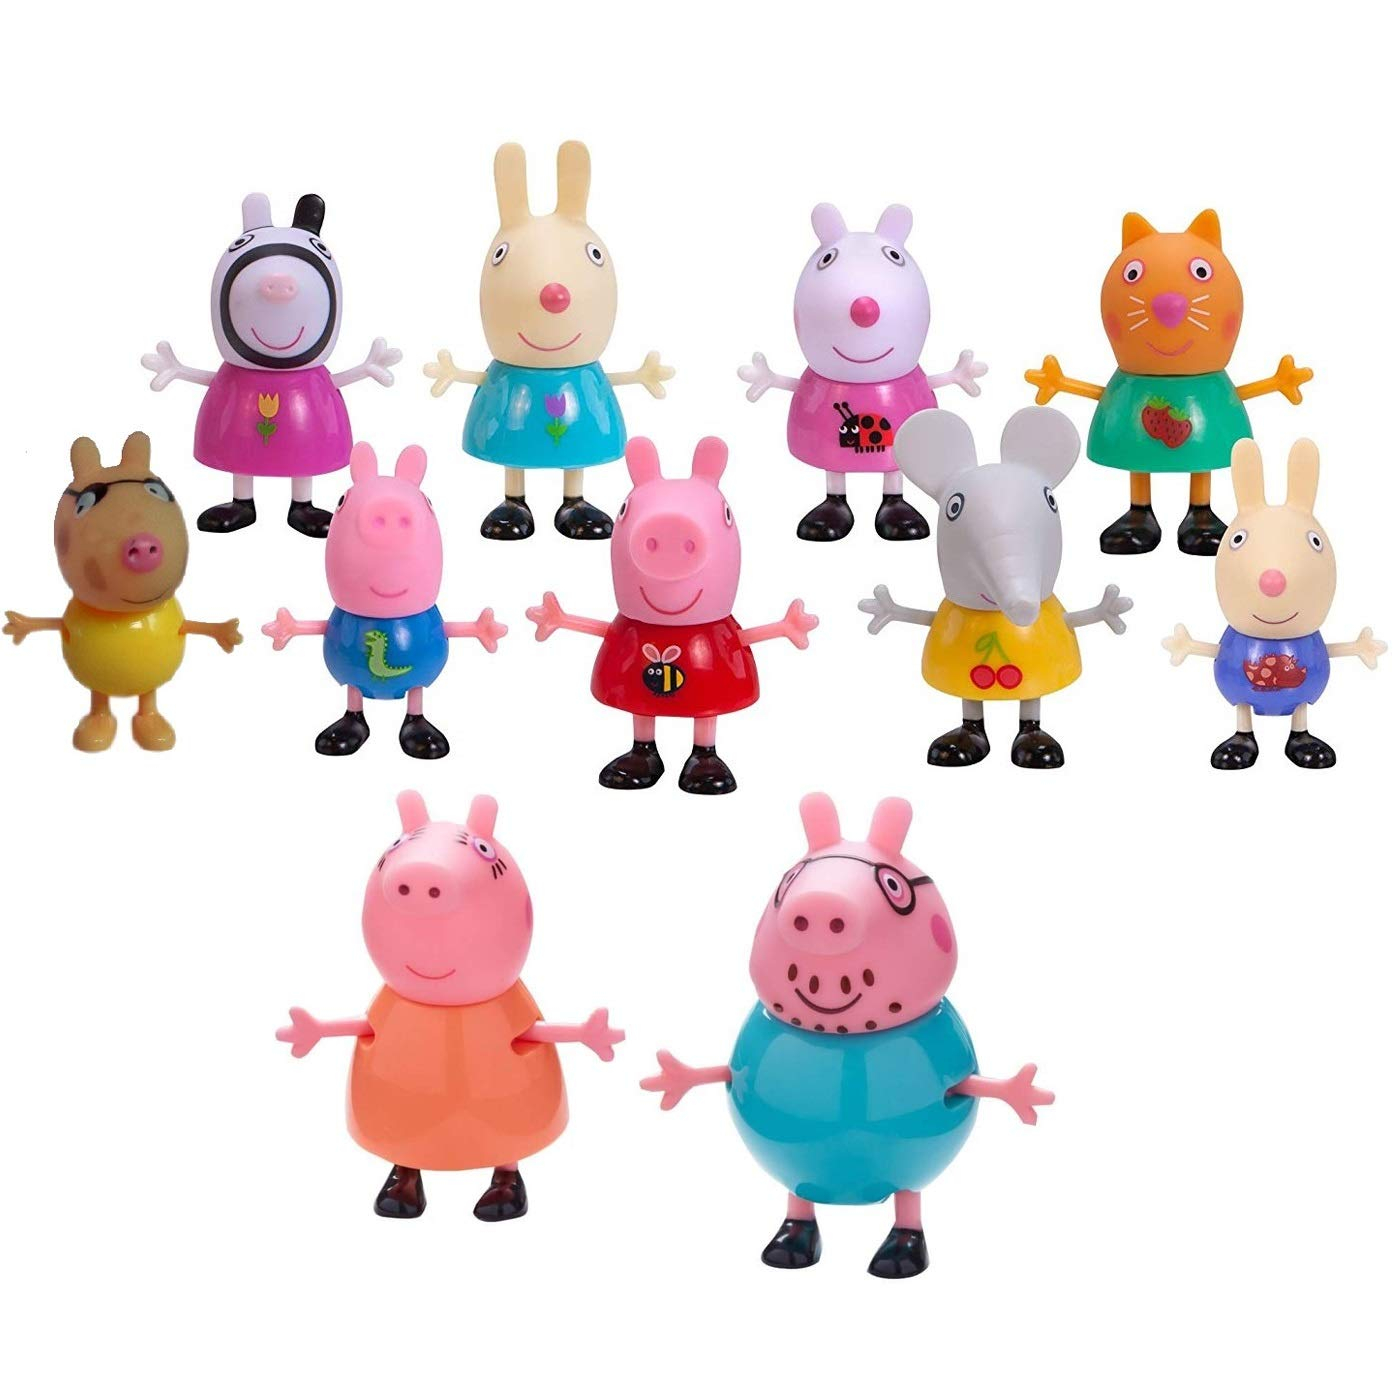 Peppa Pig Figurines